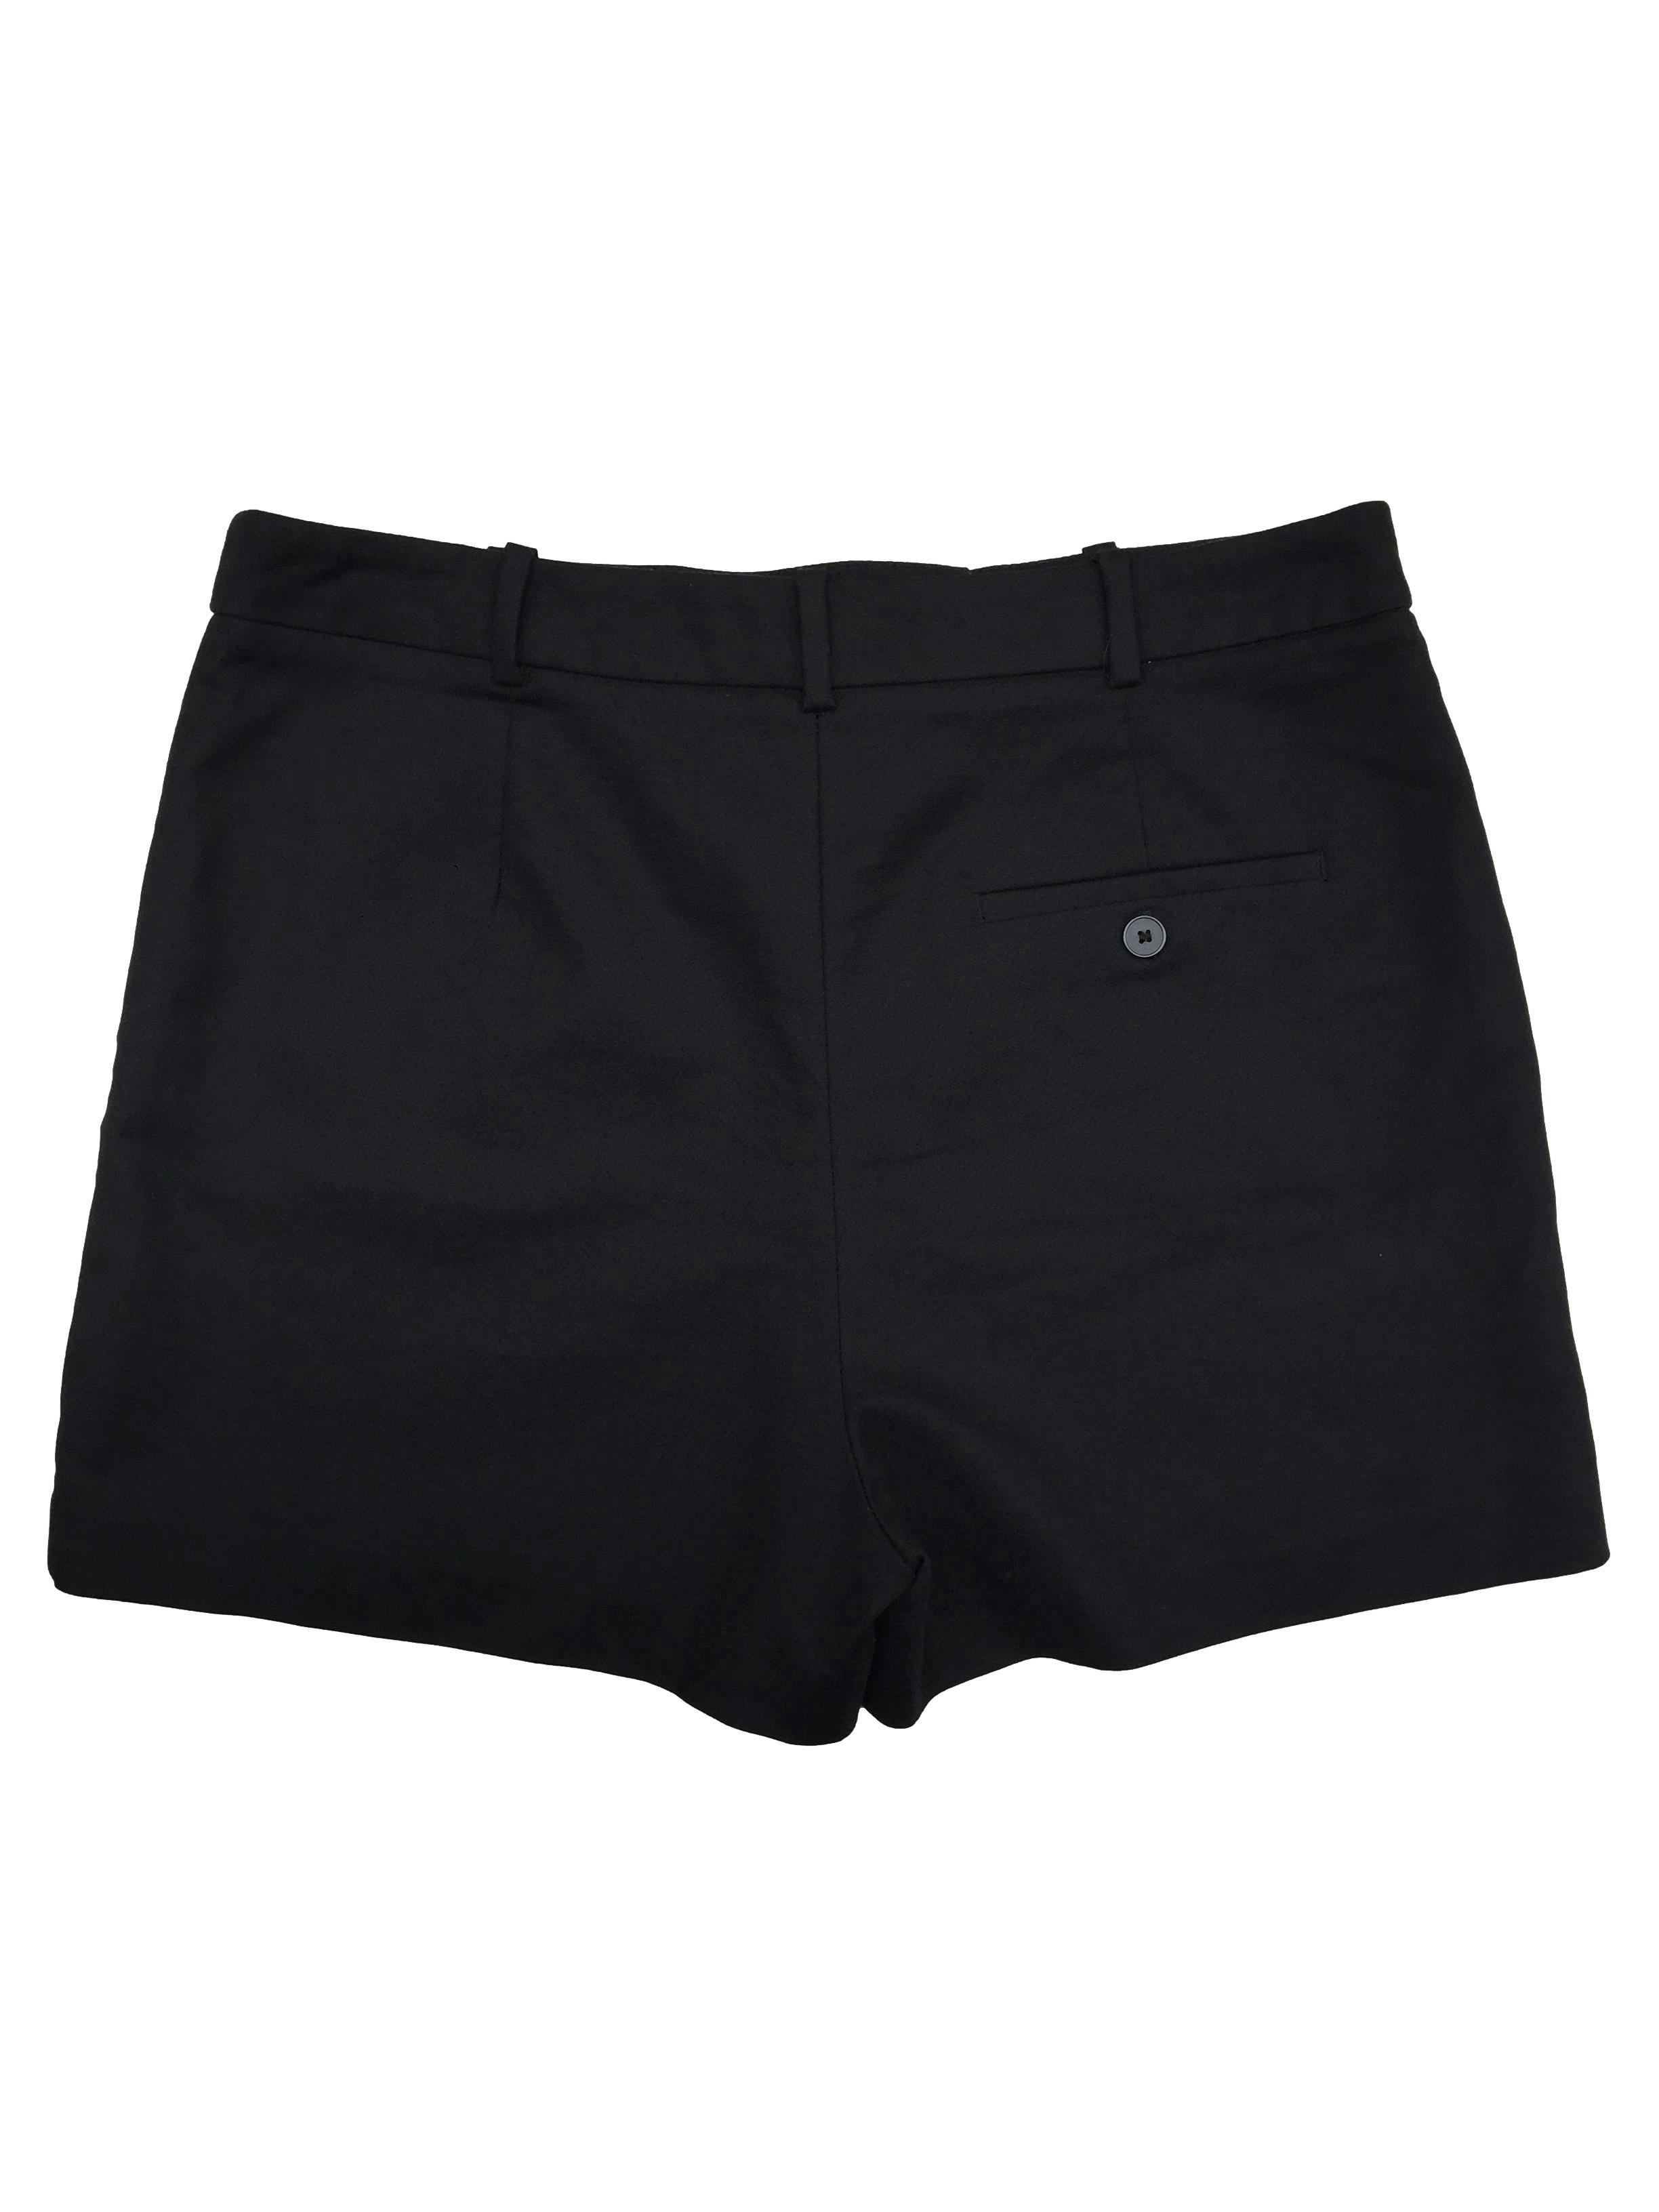 Short Zara negro 97% algodón, cierre invisible, precintos para cinturón. Cintura 84cm, Tiro 31cm, Largo 37cm.